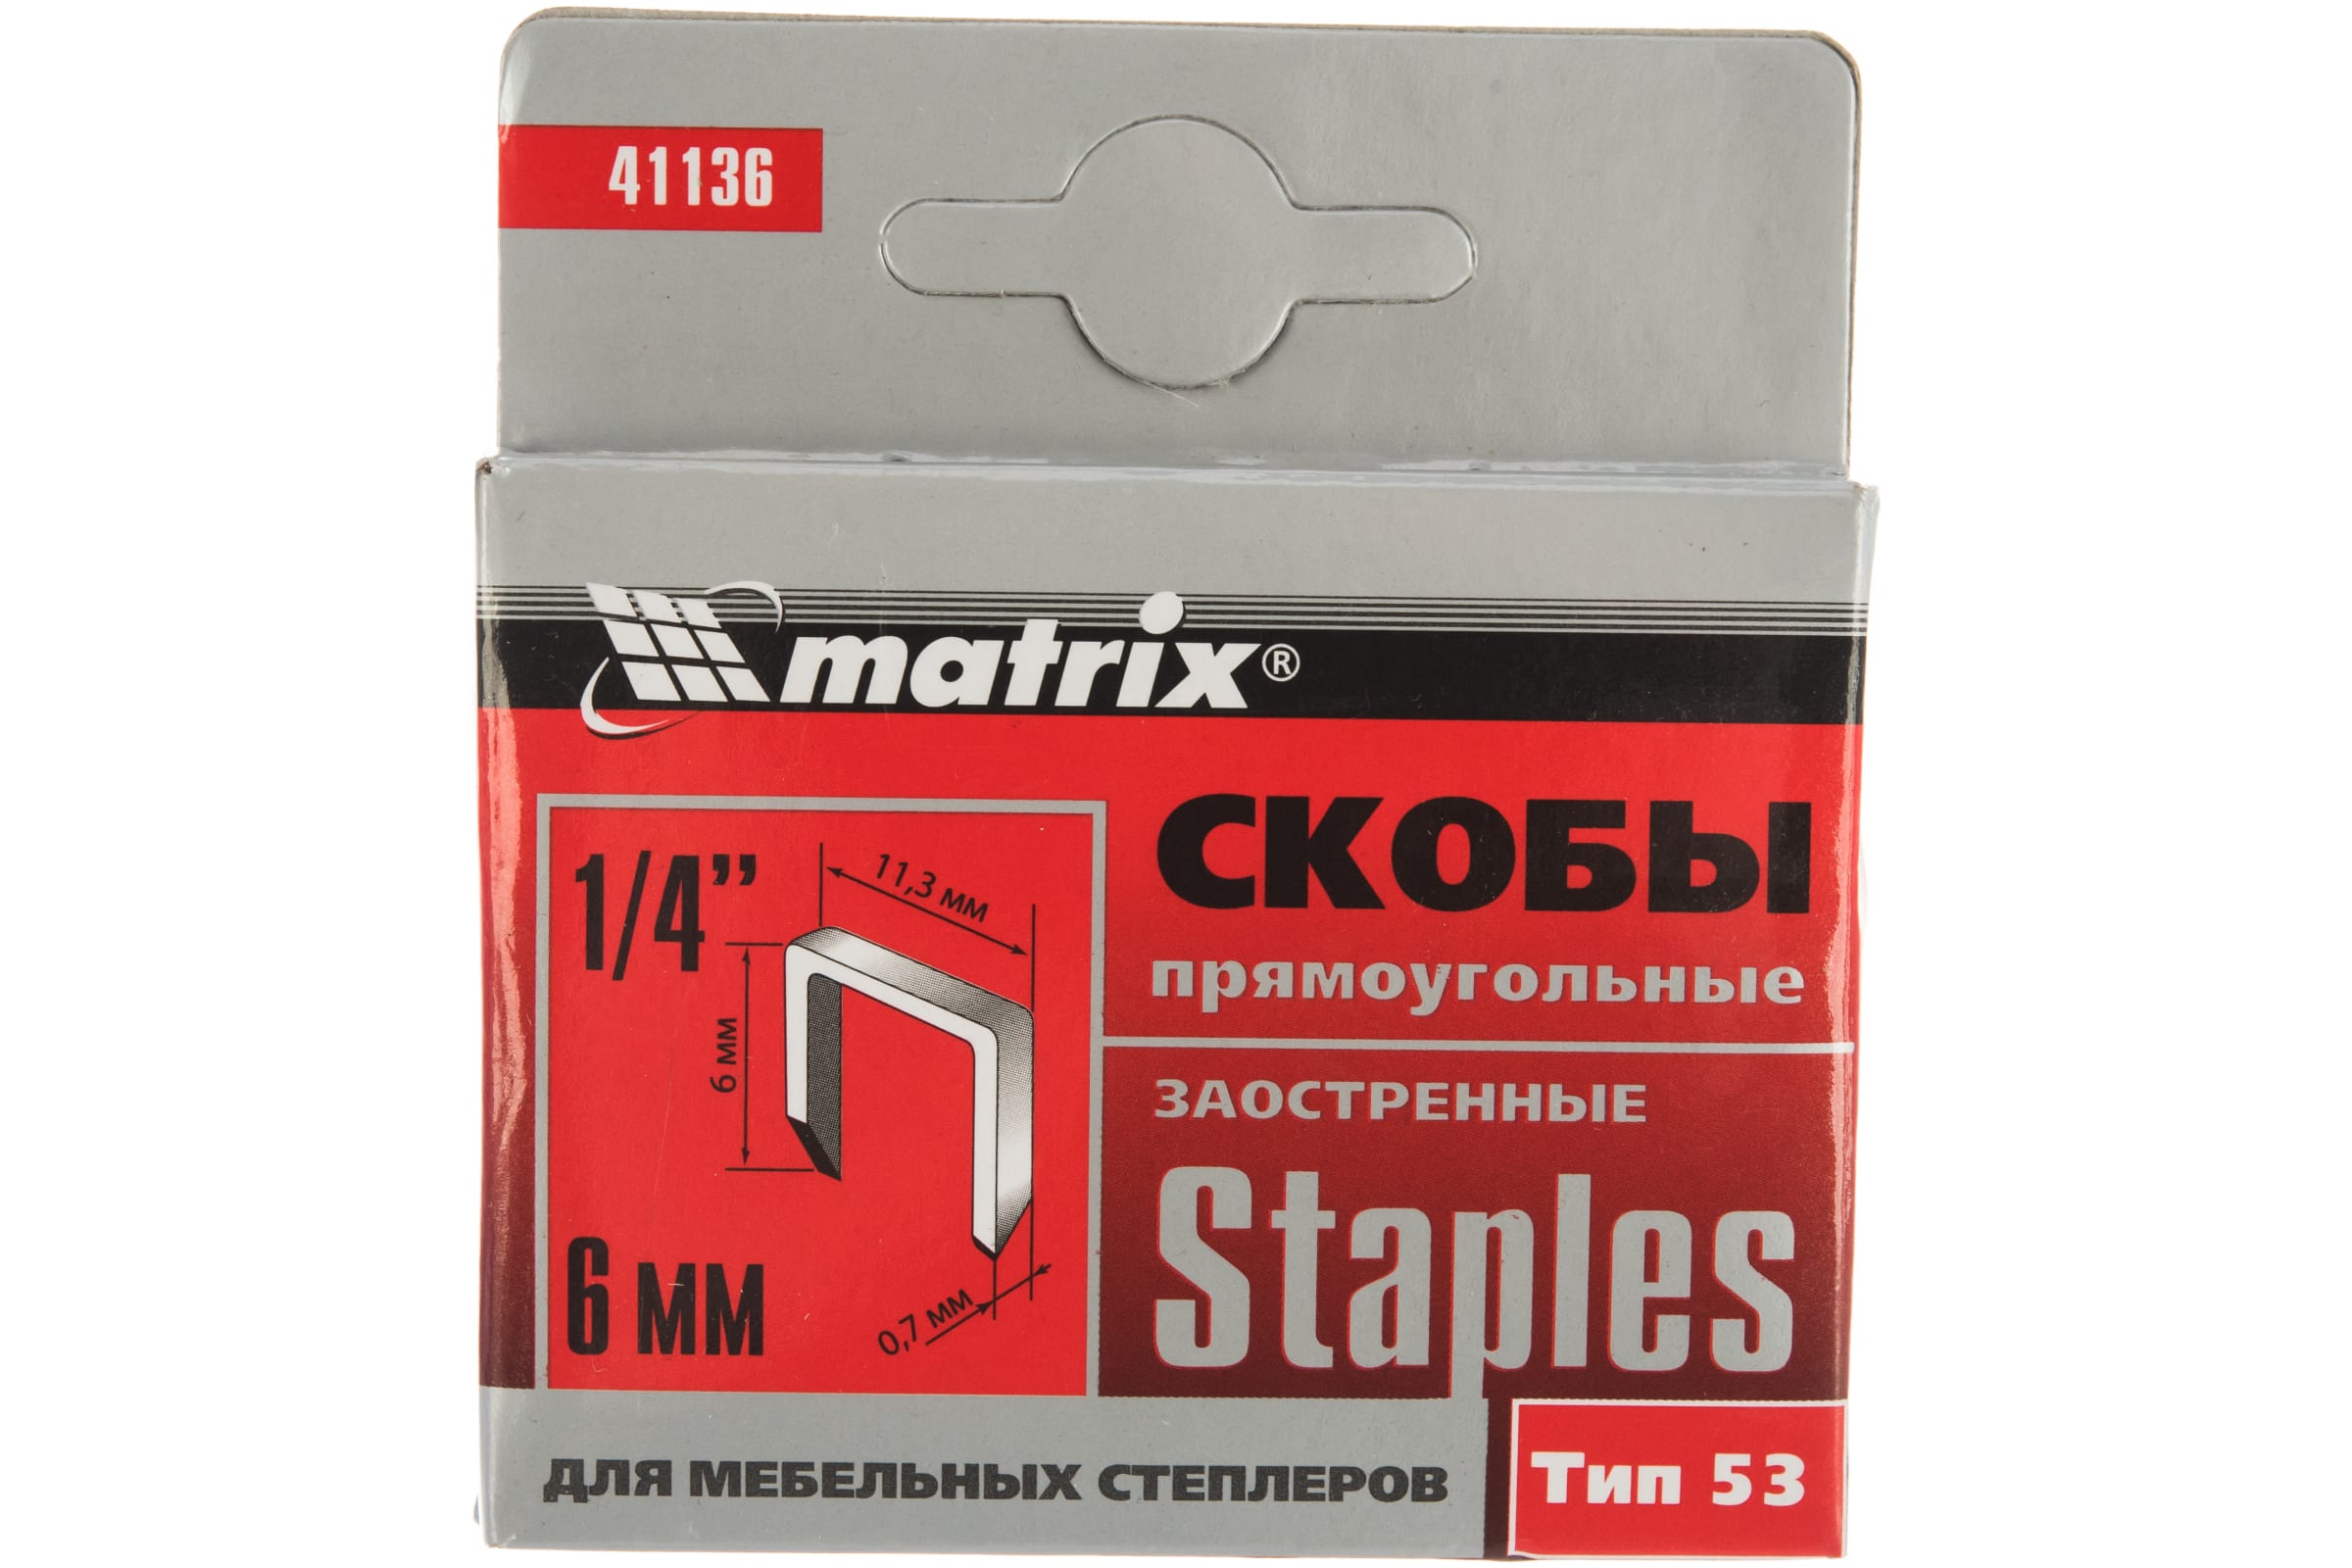 Скобы для электростеплера MATRIX 41136 скобы для электростеплера matrix 41208